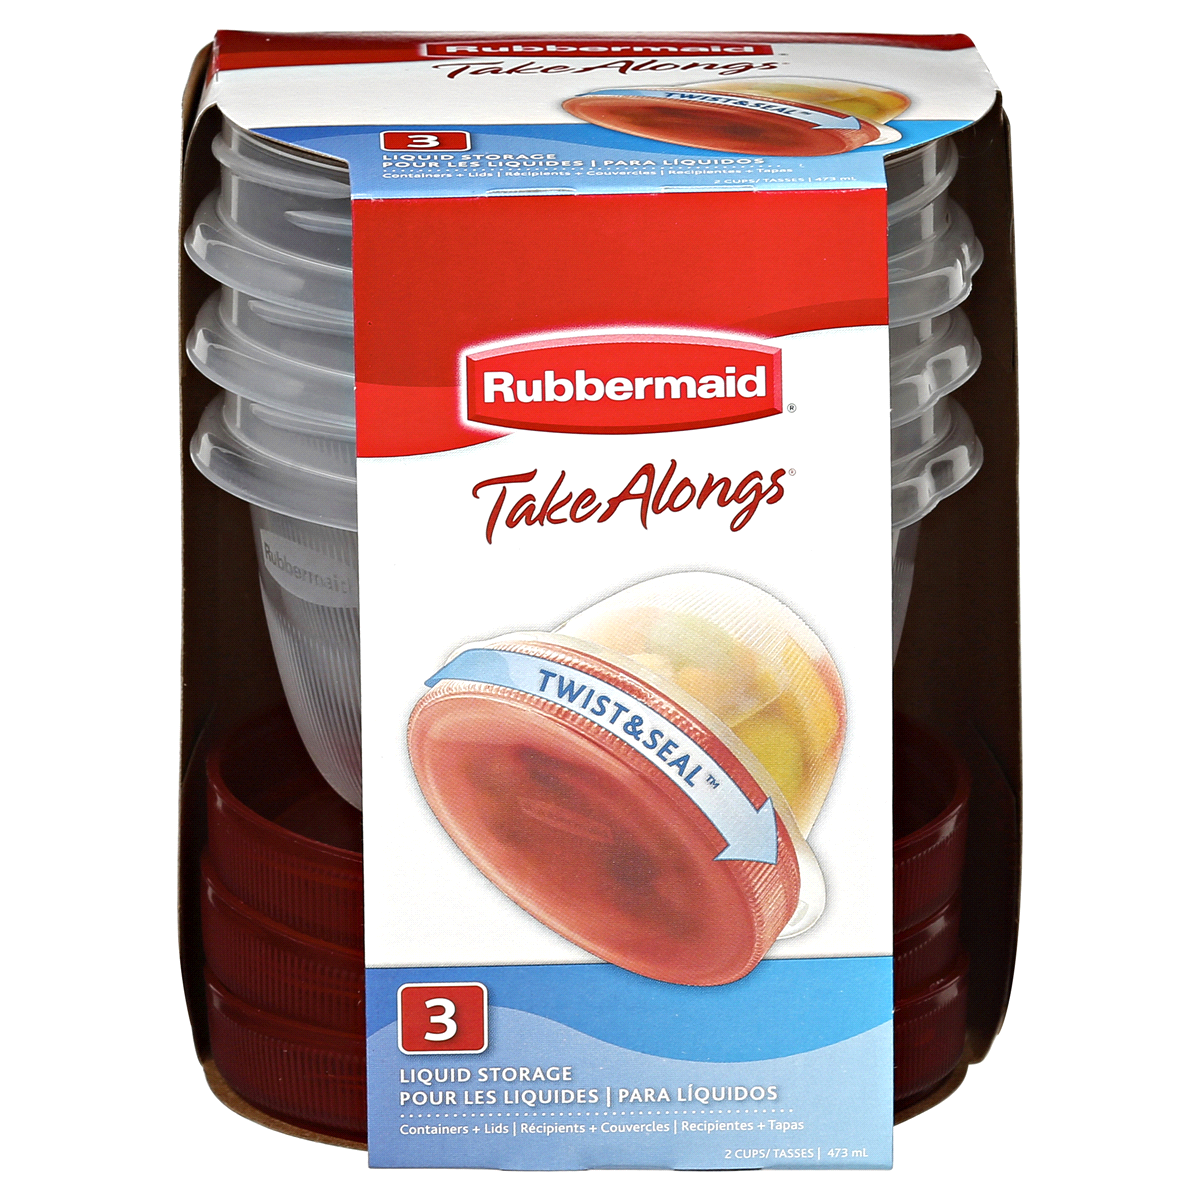 Rubbermaid, TakeAlongs, Twist & Seal Liquid Storage, 2 Cup, 3